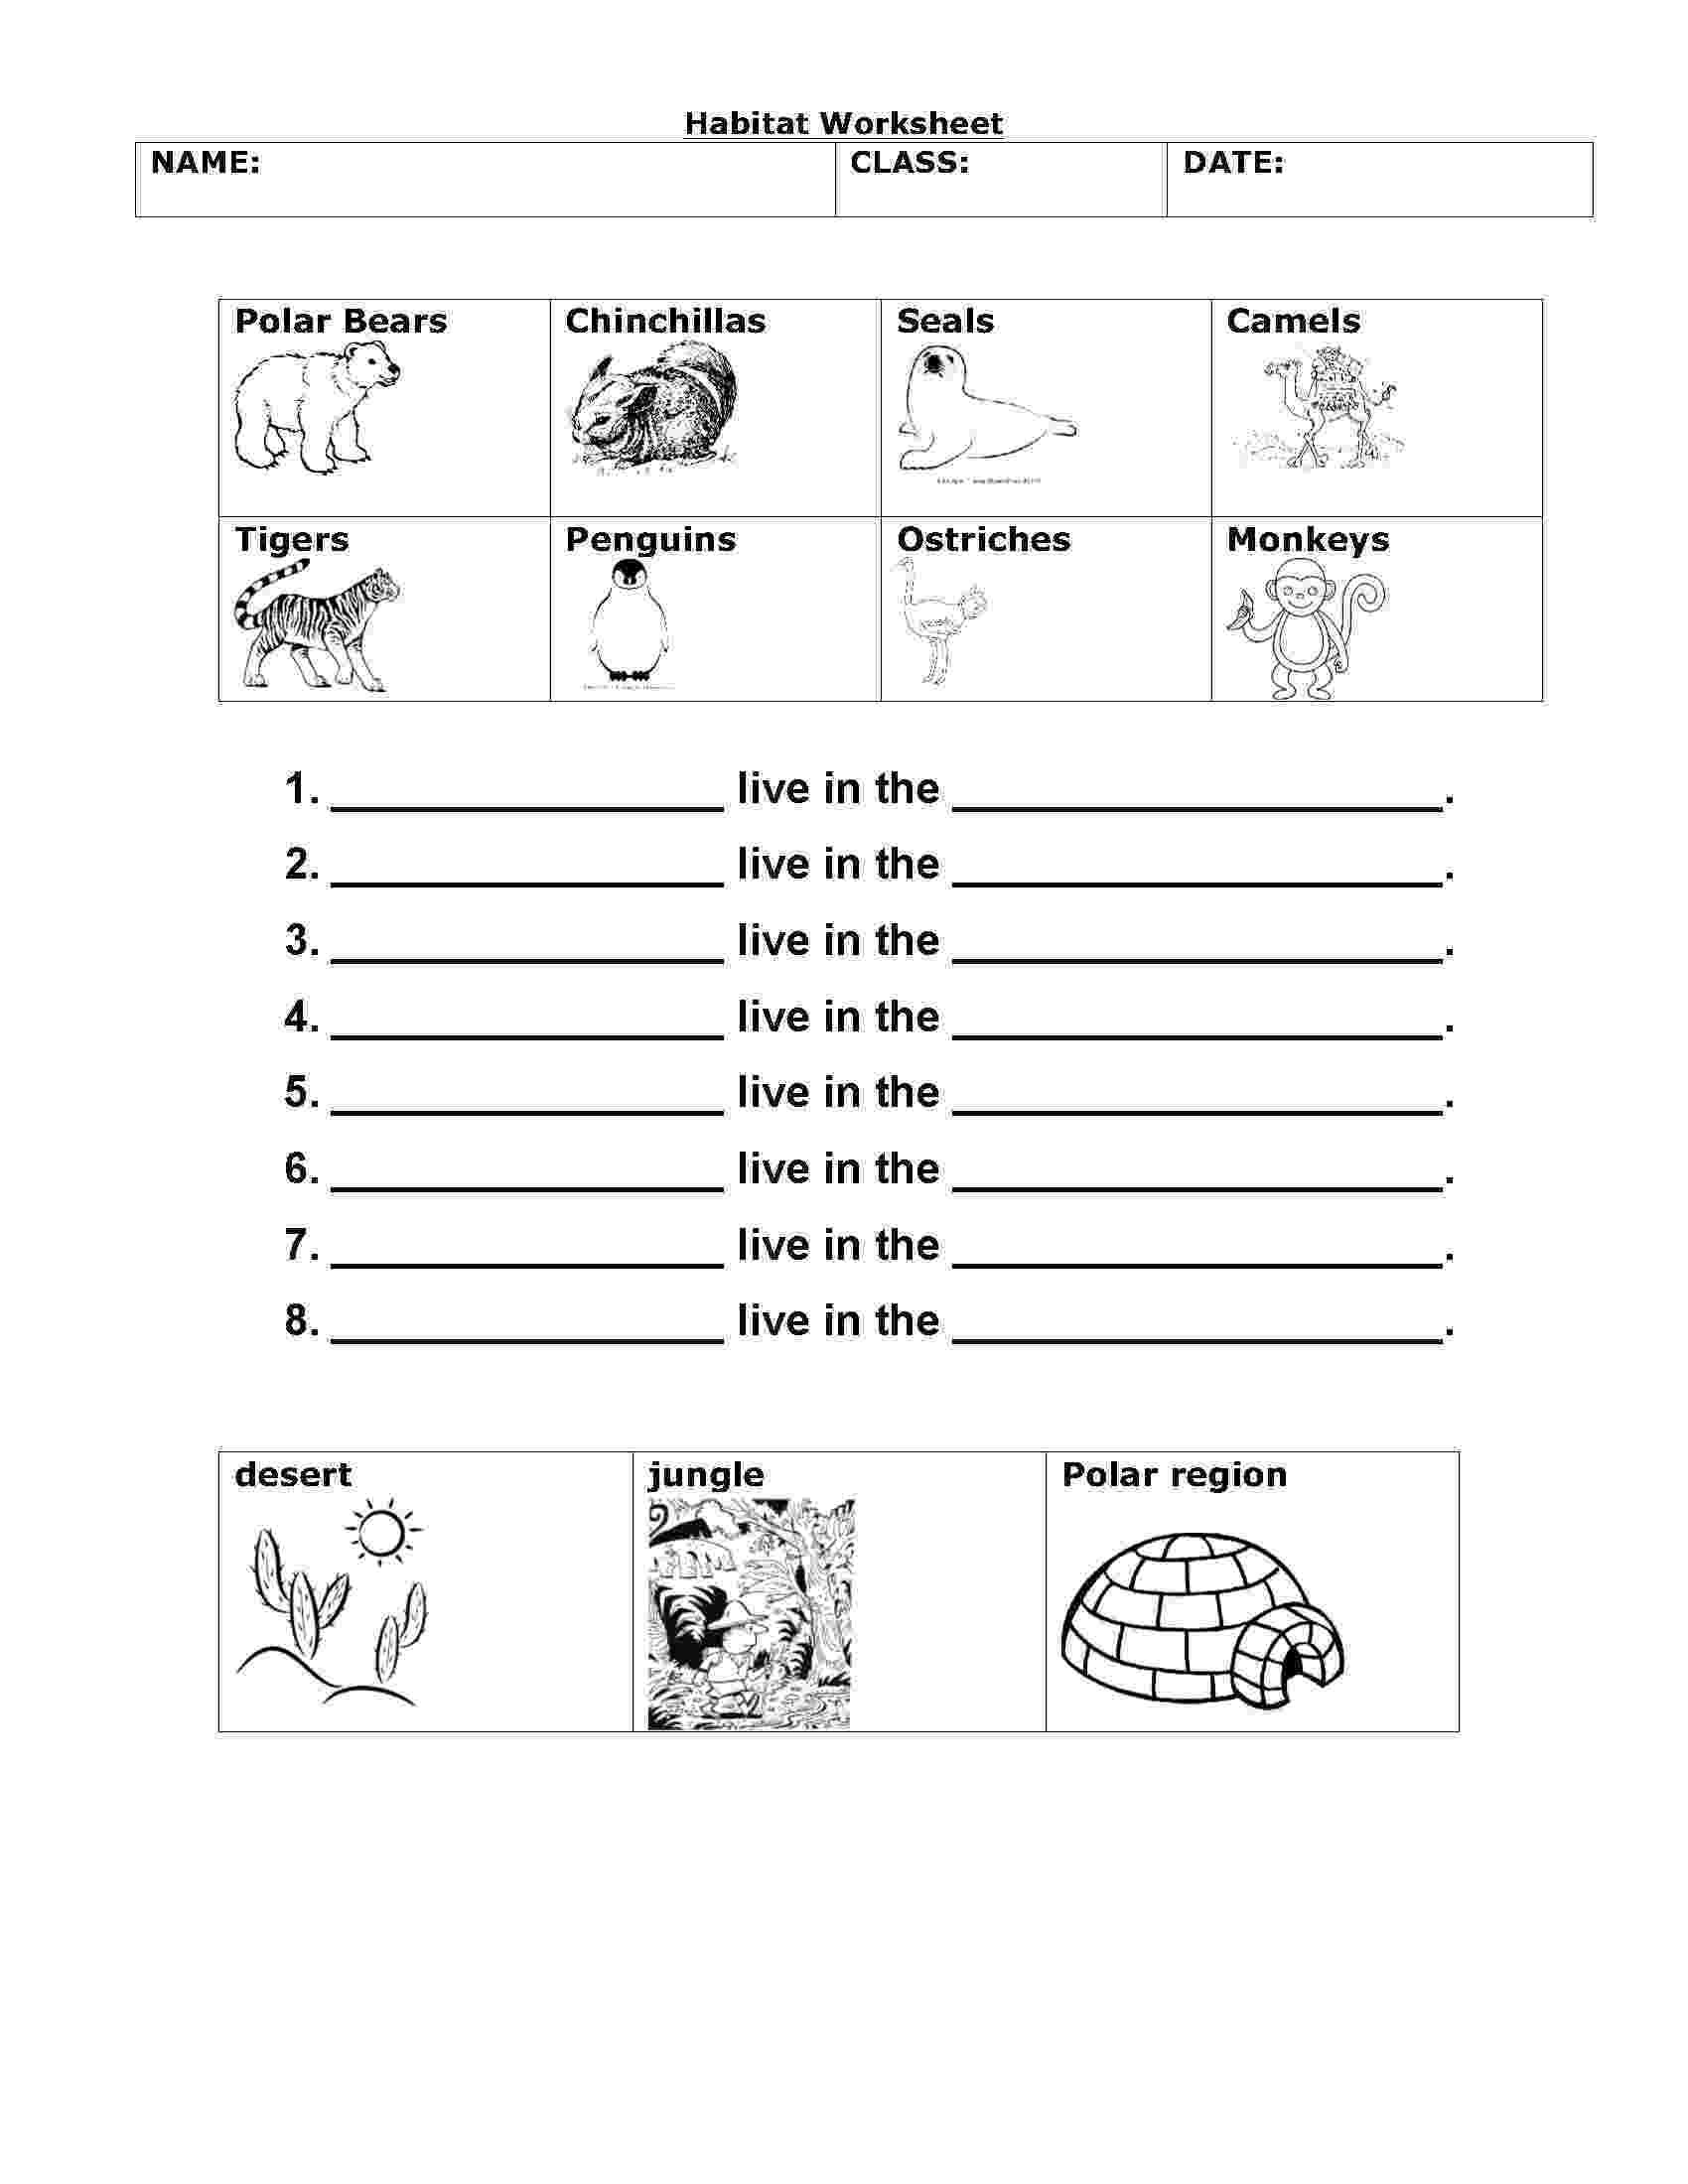 2nd Grade Habitat Worksheets Math Worksheet 65 Excelent Science Worksheets for 2nd